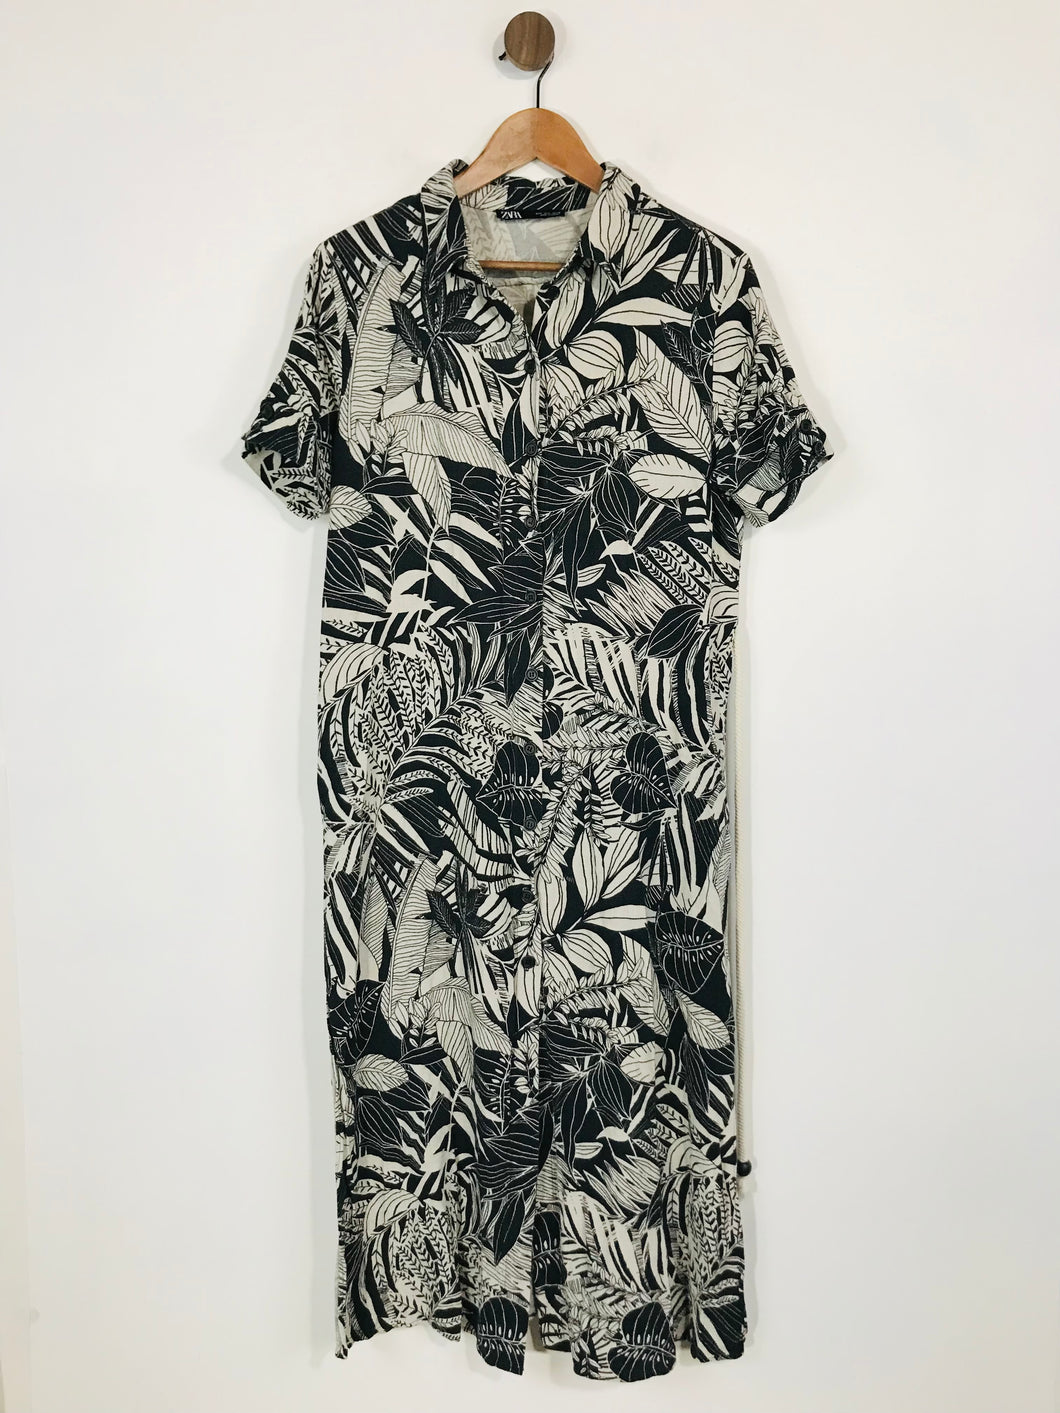 Zara Women's Linen Floral Shirt Dress | L UK14 | Black